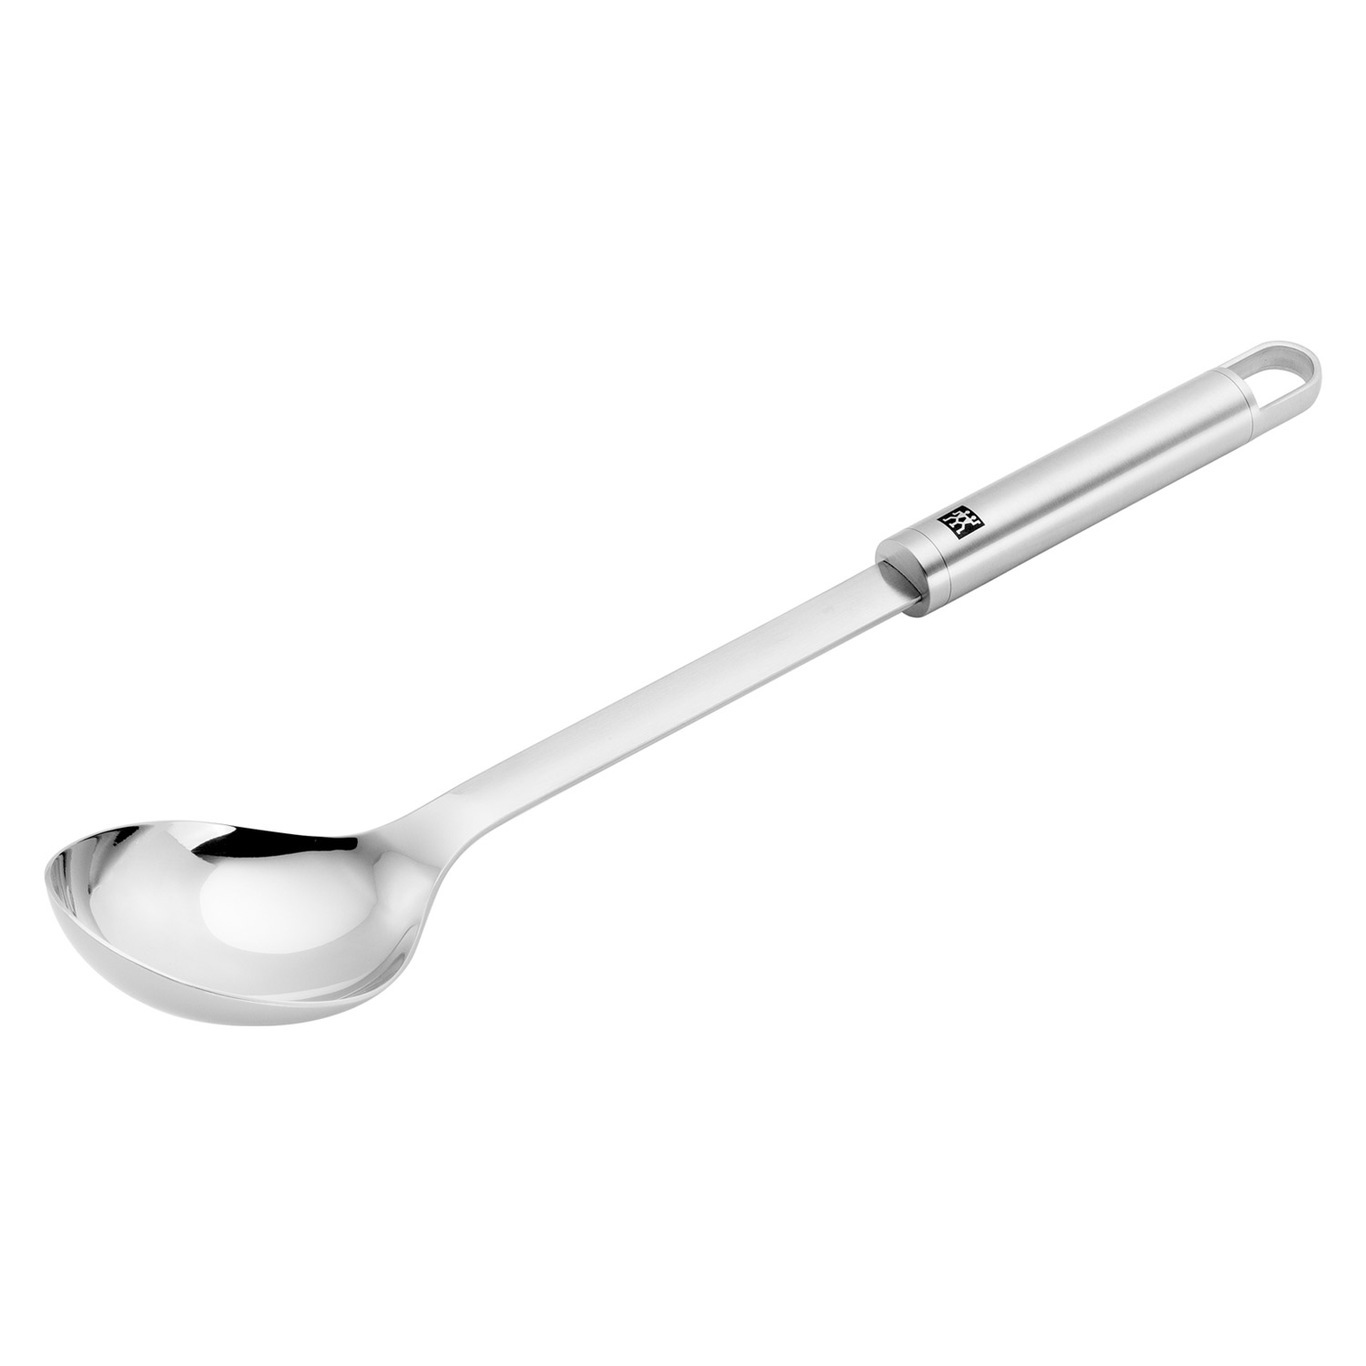 Pro Serving Spoon 35 cm